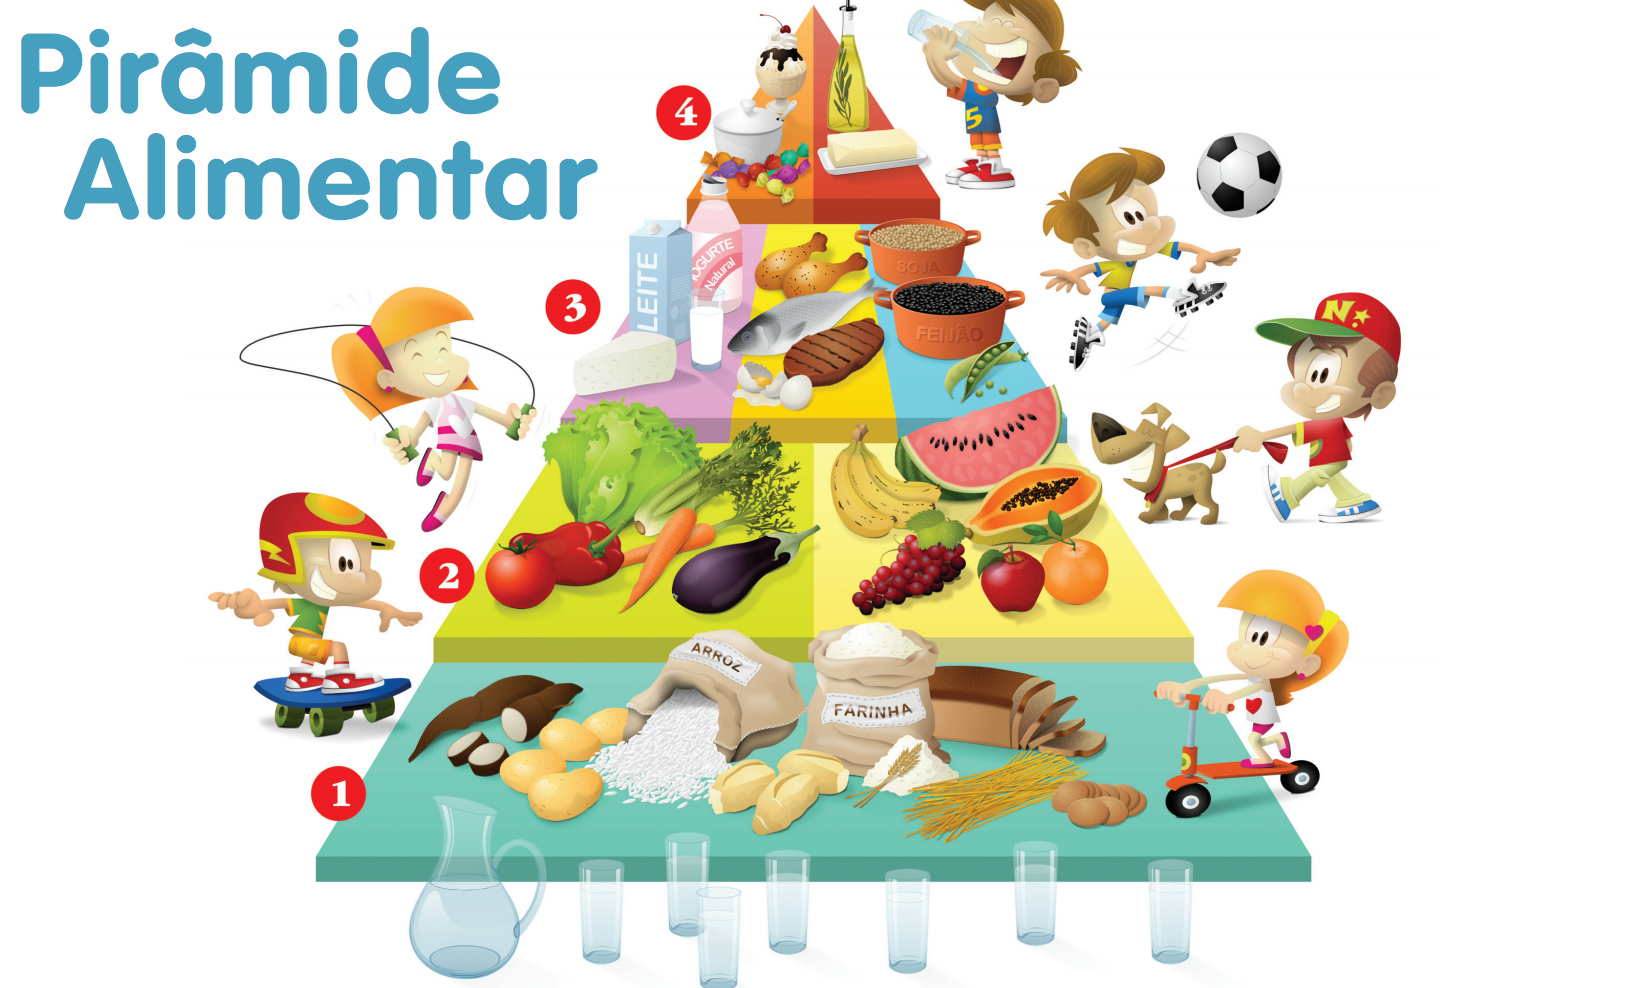 A pirâmide alimentar serve para mostrar, visualmente, quais tipos de alimentos devemos ingerir em maior ou menor quantidade.